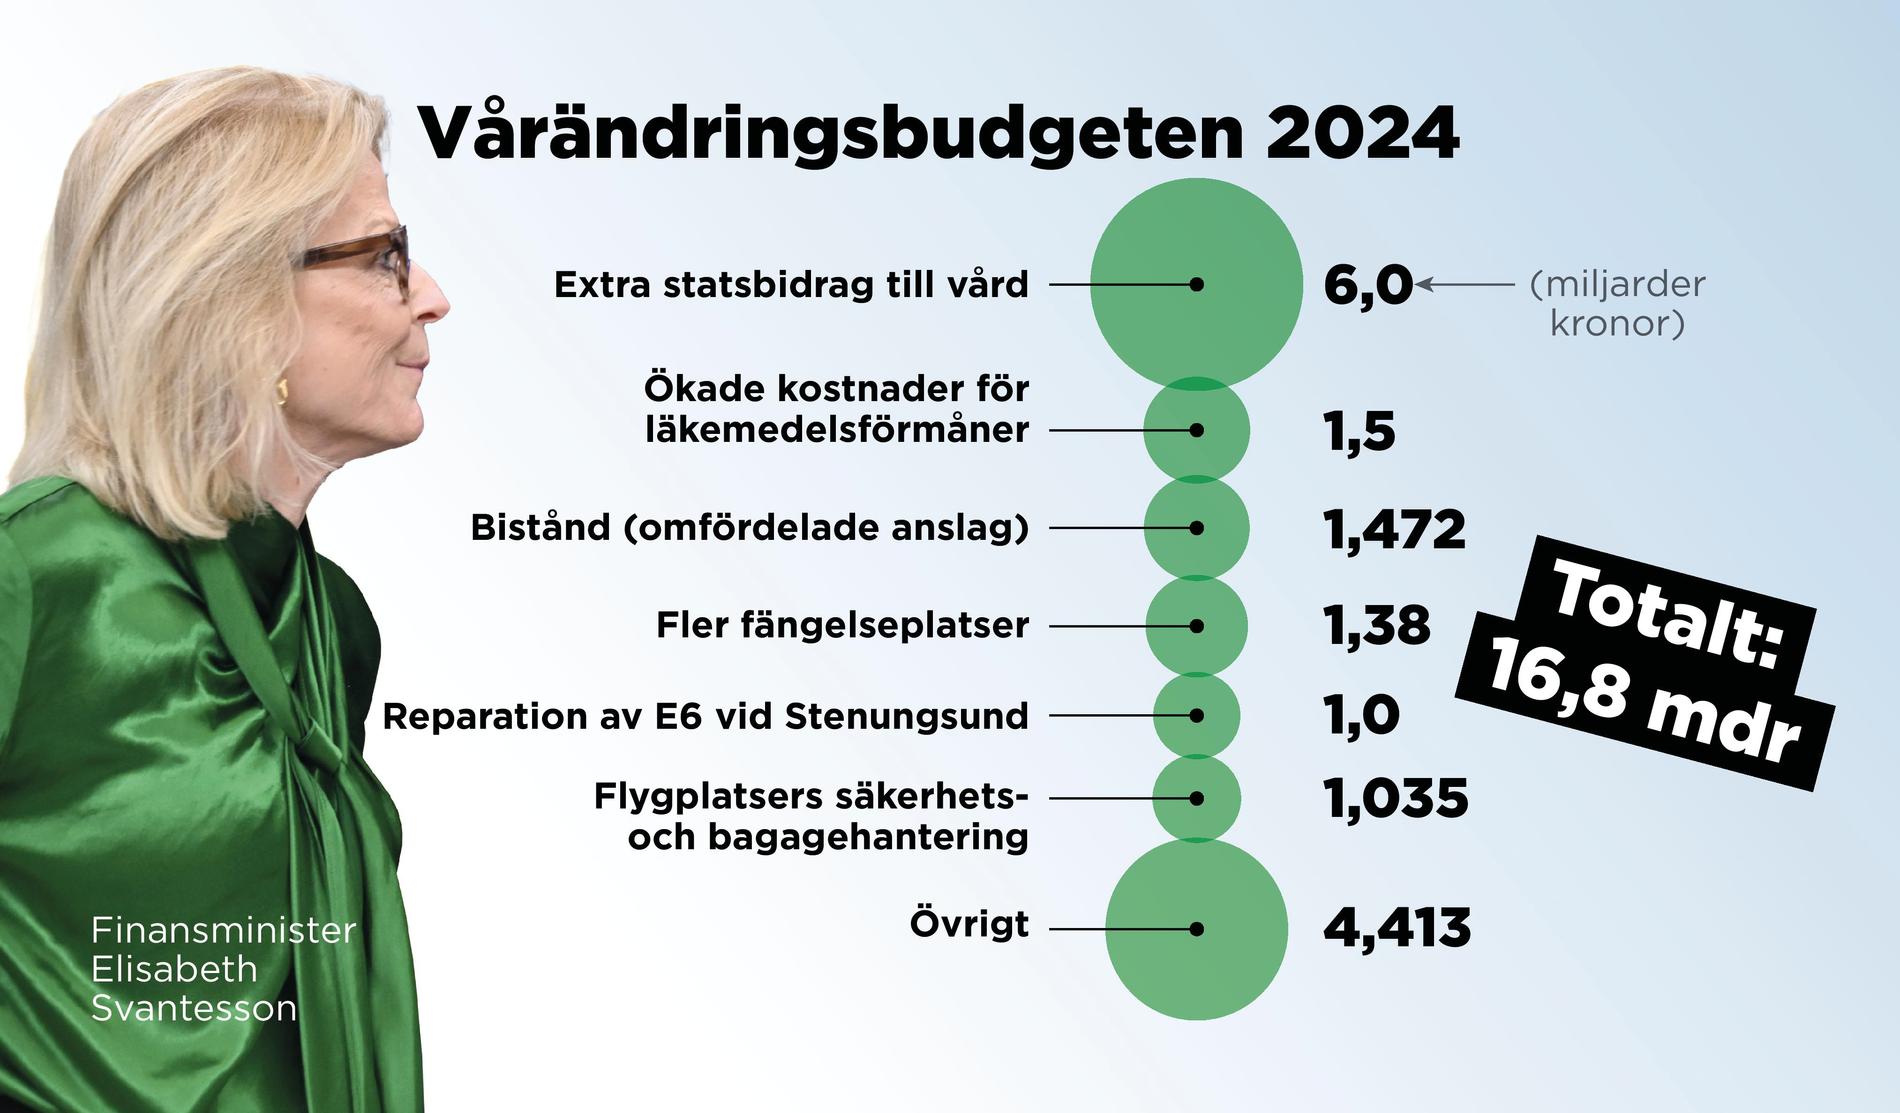 Hela budgetpaketet uppgår till 16,8 miljarder kronor.